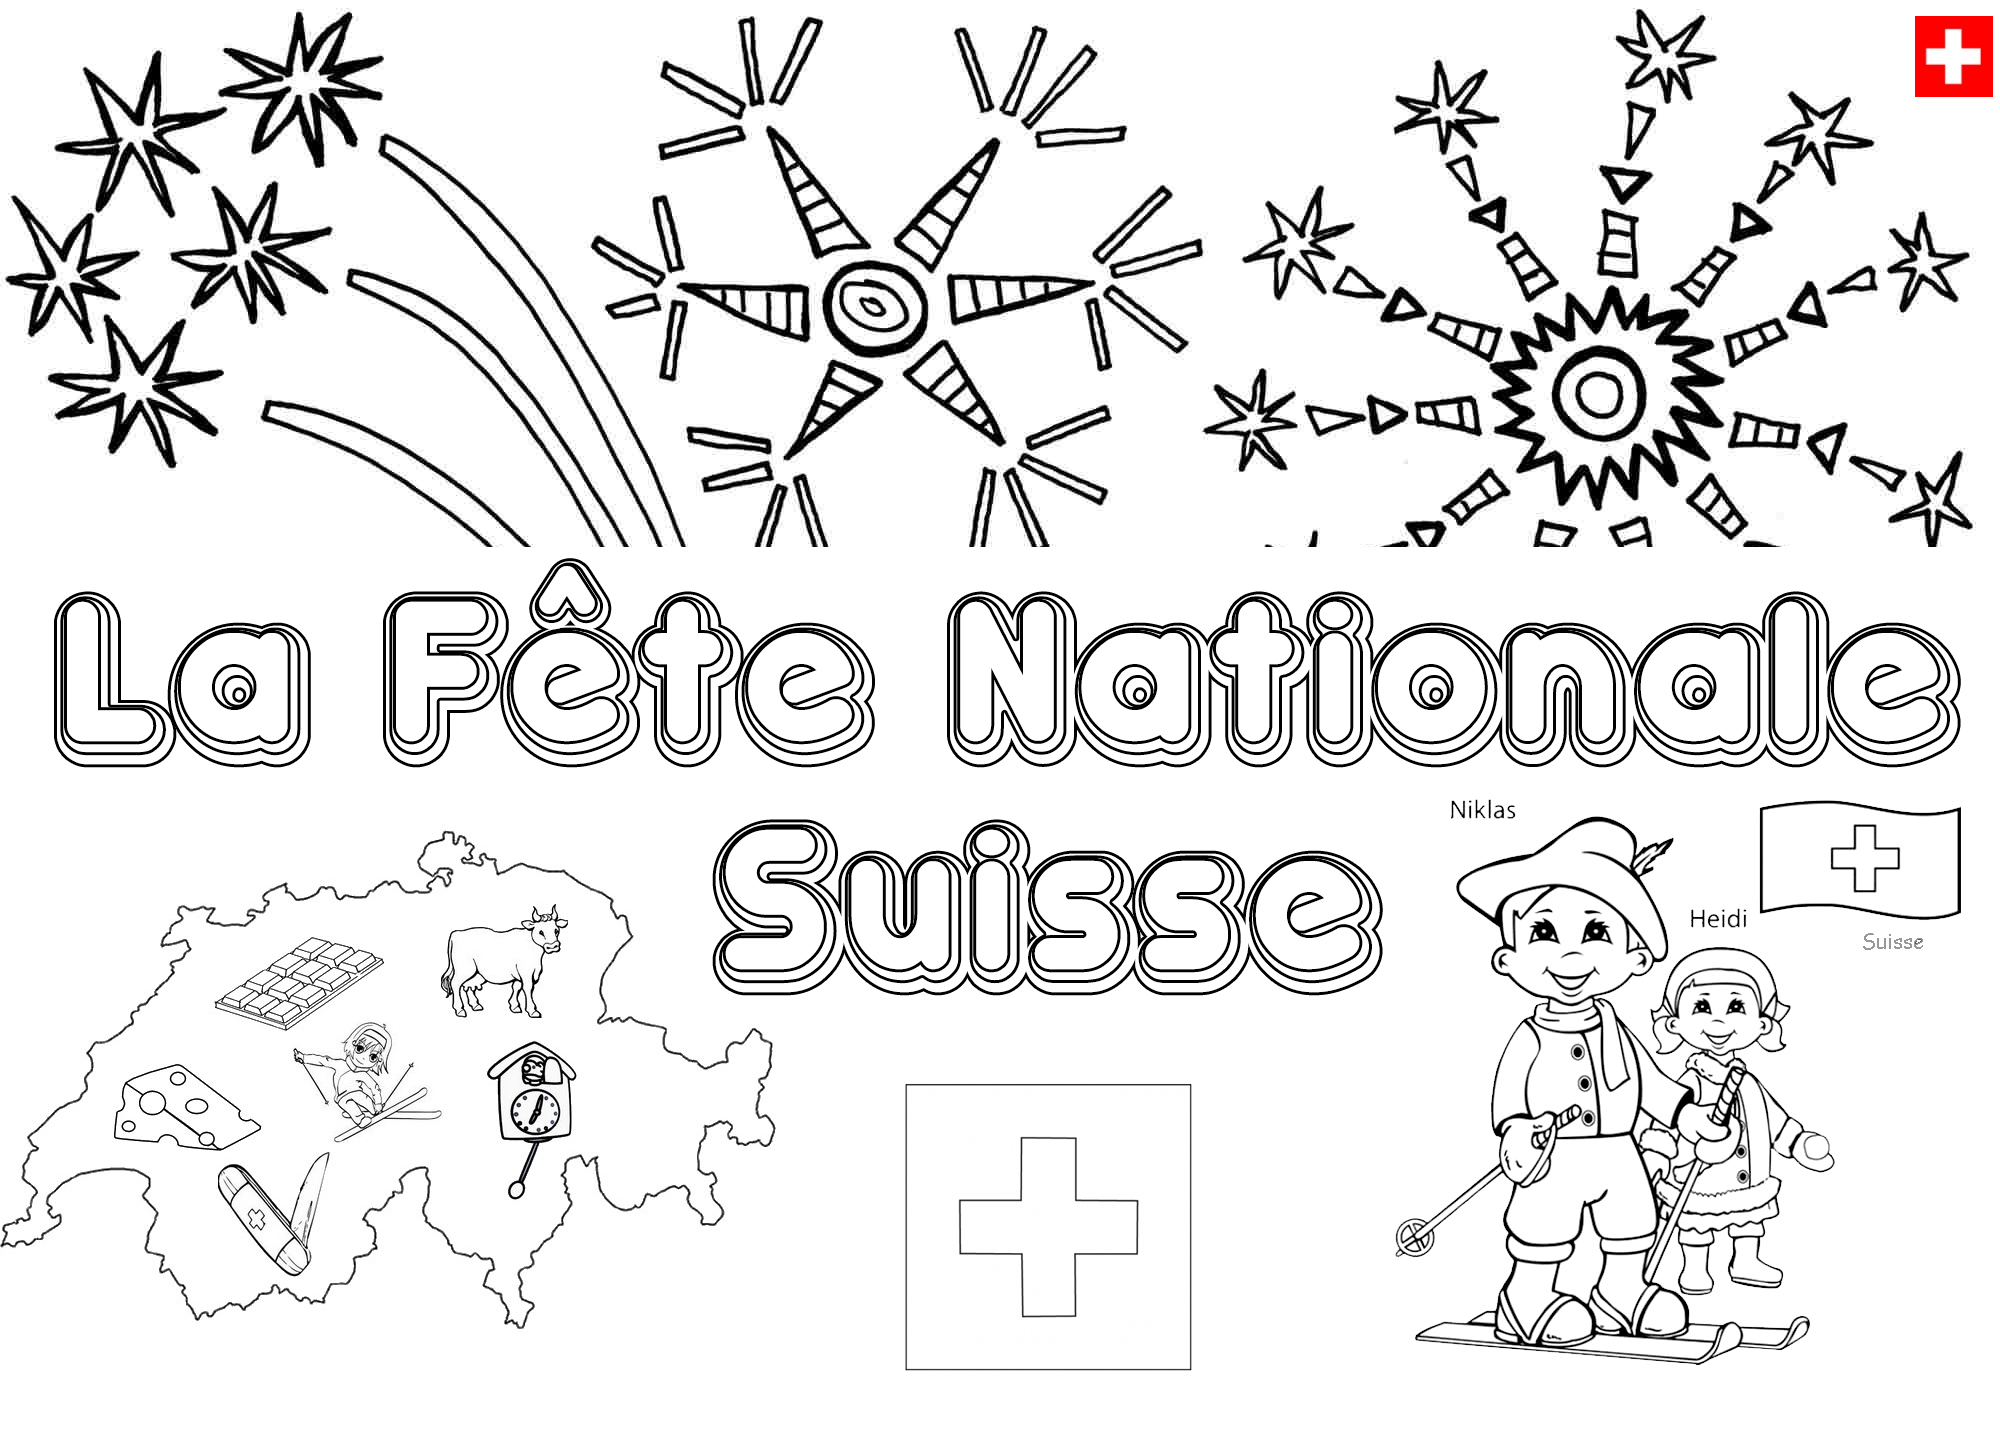   Une journée nationale suisse 